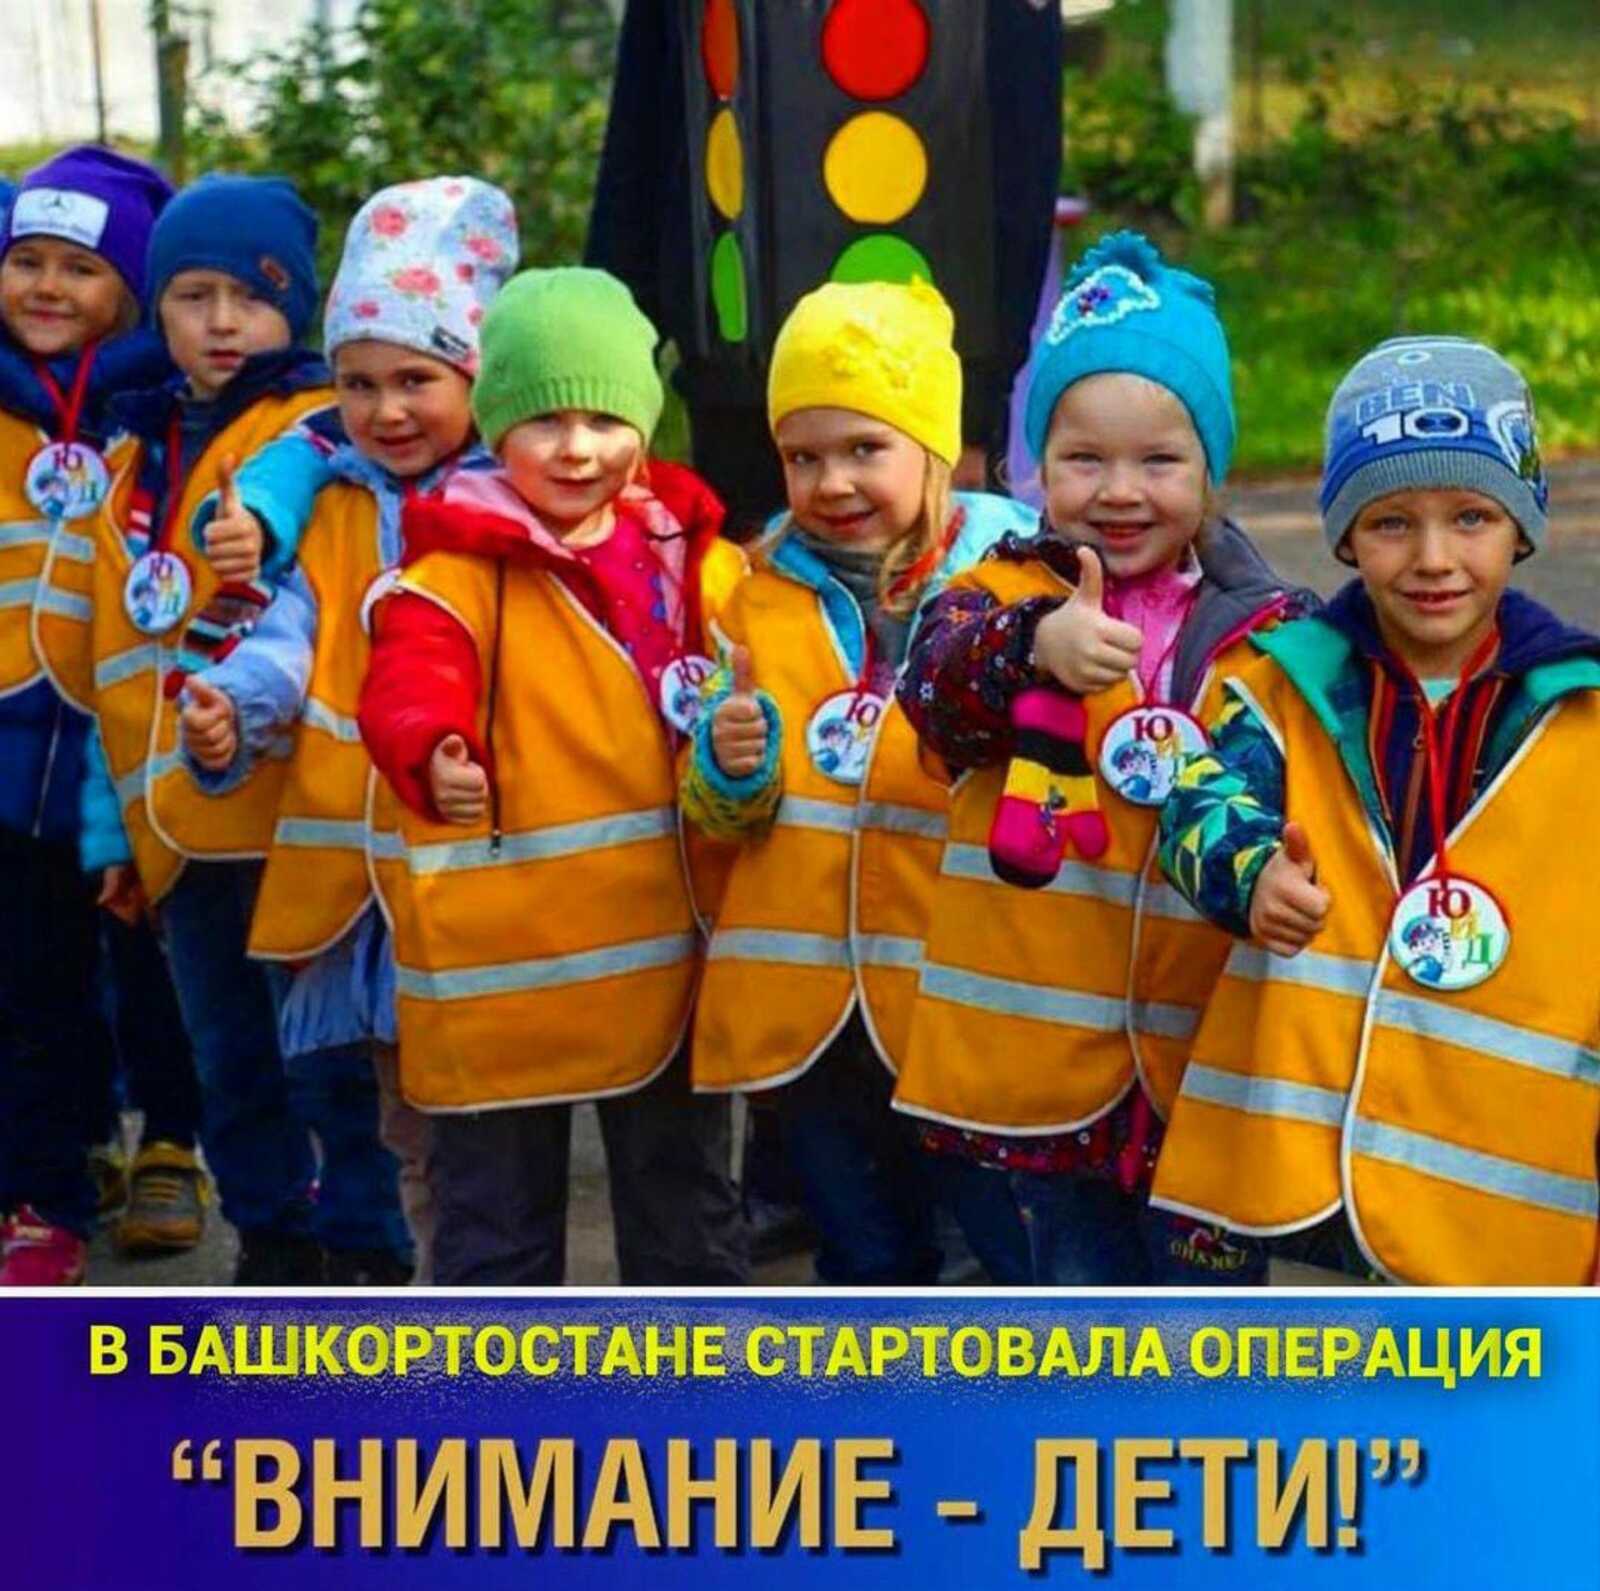 В Башкирии началась профилактическая операция «Внимание — дети!»